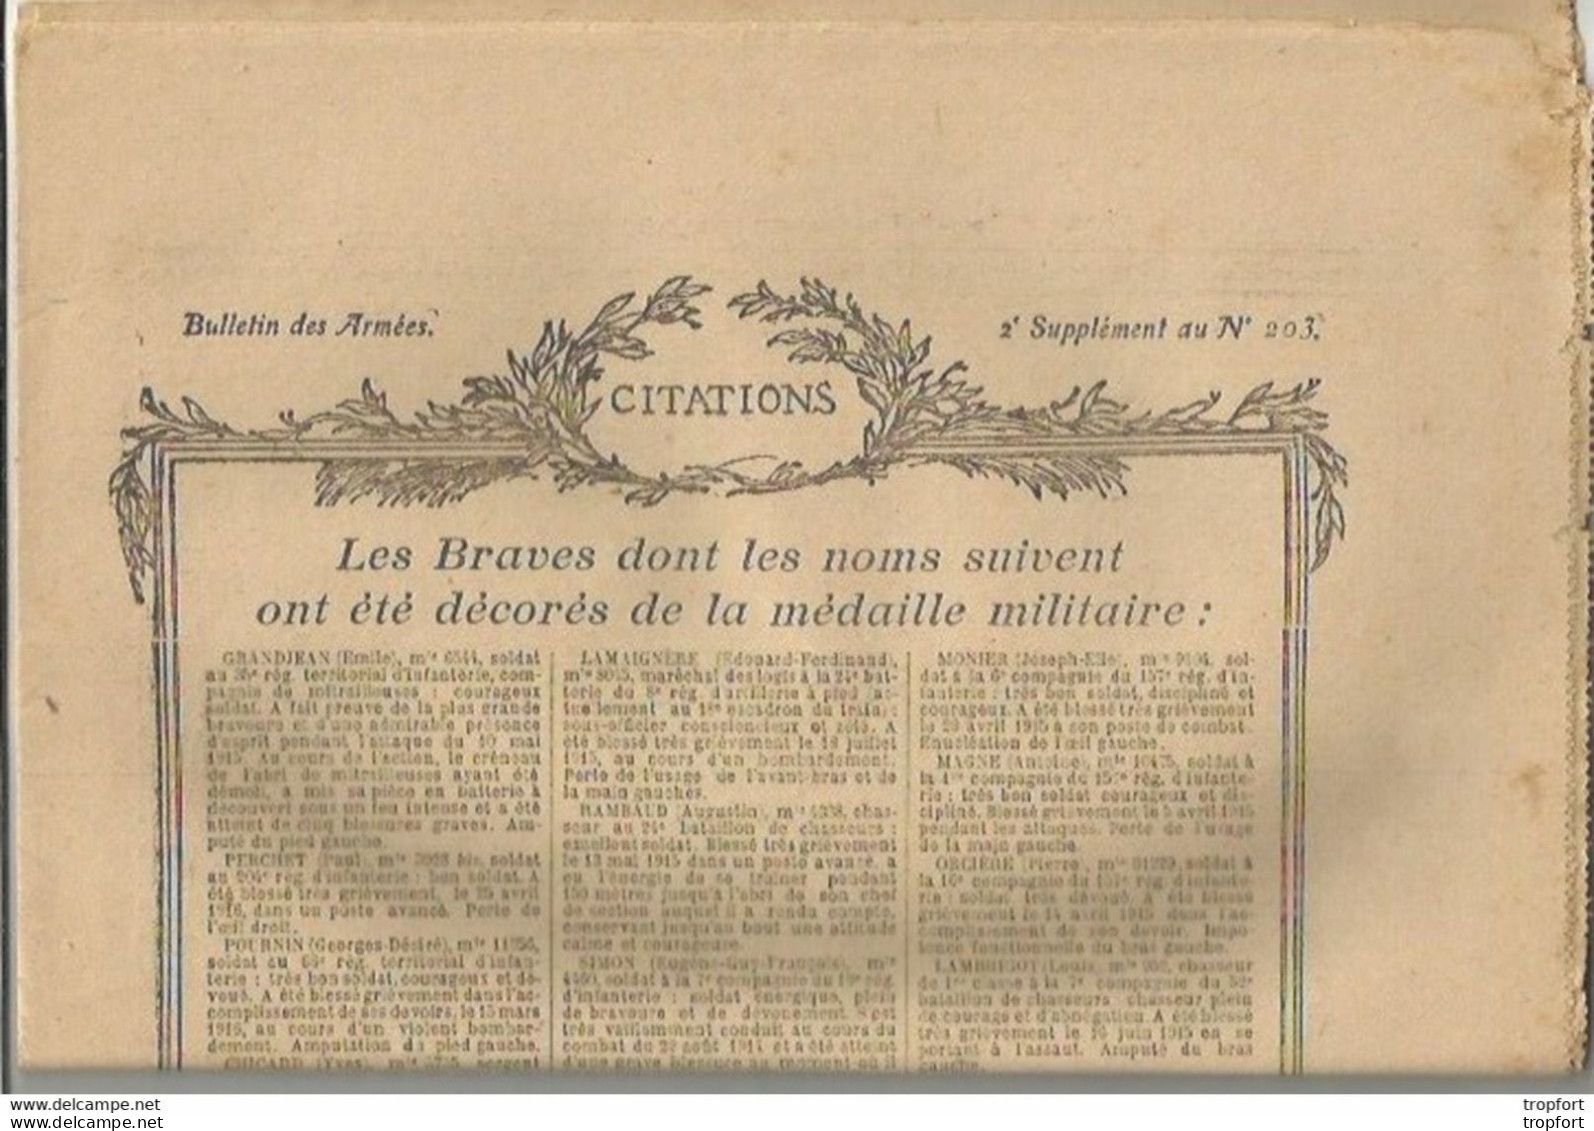 TH / Rare Journal BULLETIN DES ARMEES CITATIONS N°203 WW1 16 Pages MILITAIRES Citation 1914 1918 Guerre Bléssés - General Issues